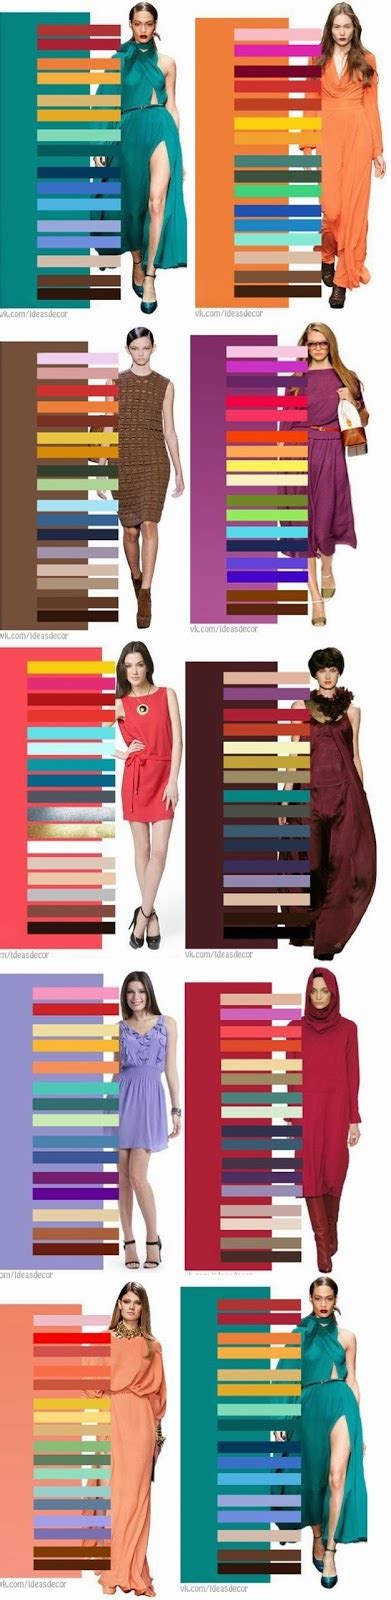 Rachel´s Fashion Room Cómo Combinar Los Colores How To Combine Colors